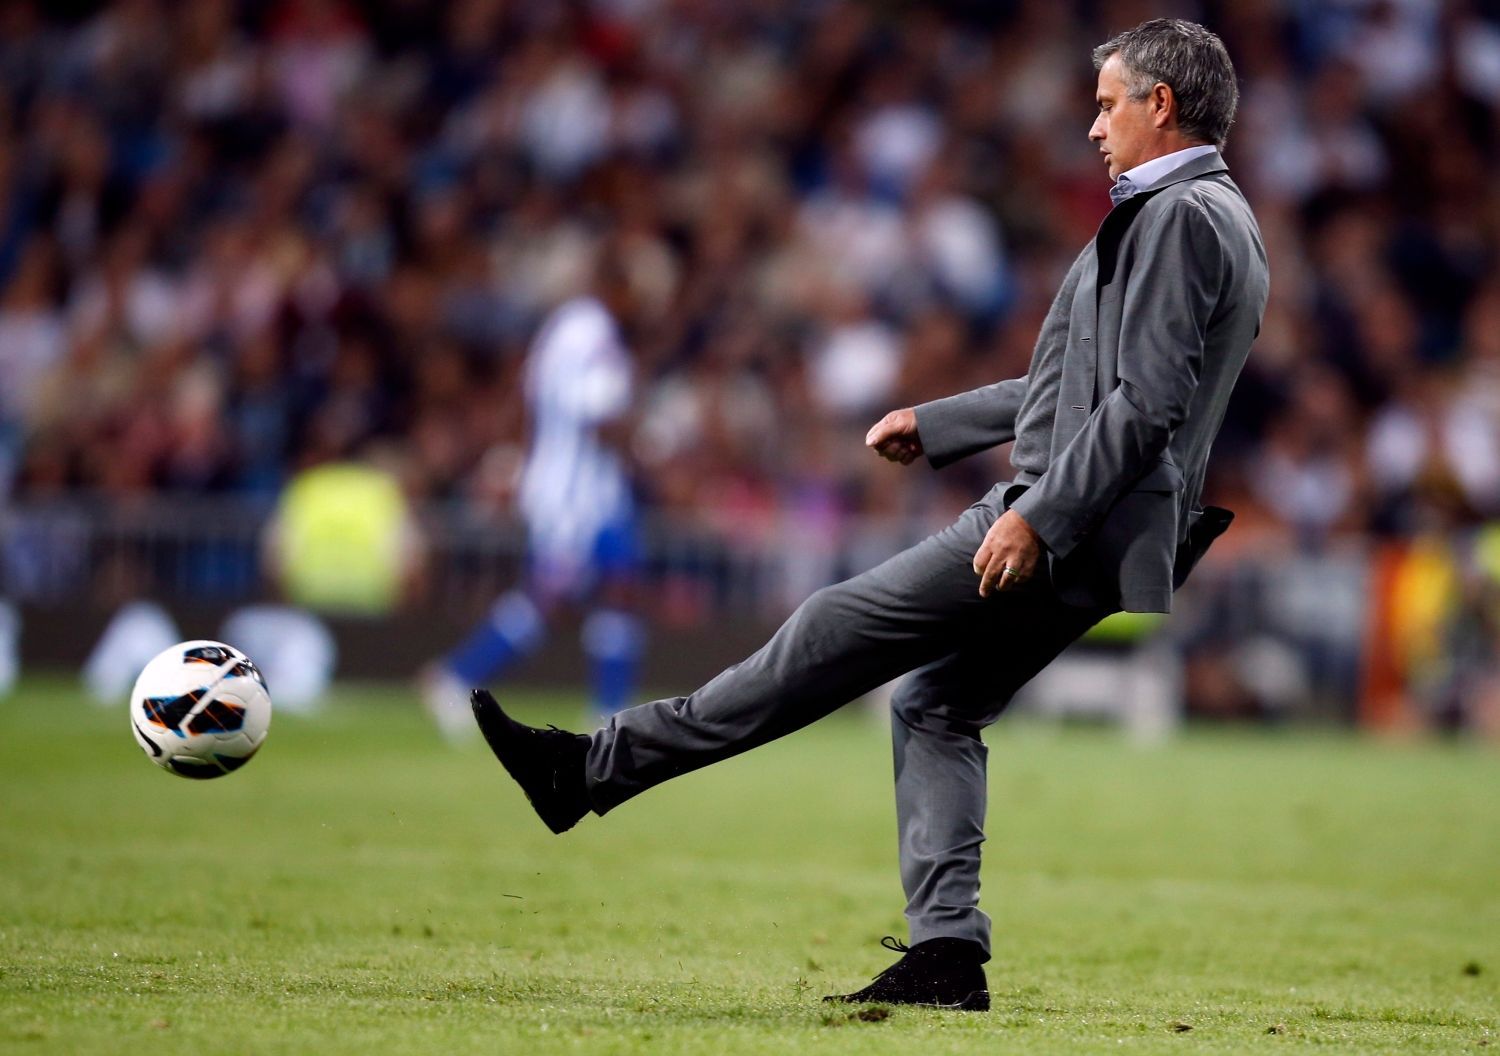 Portugalský fotbalový trenér José Mourinho z Realu Madrid kope do míče v utkání La Ligy 2012/13 s Deportivem La Coruňa.